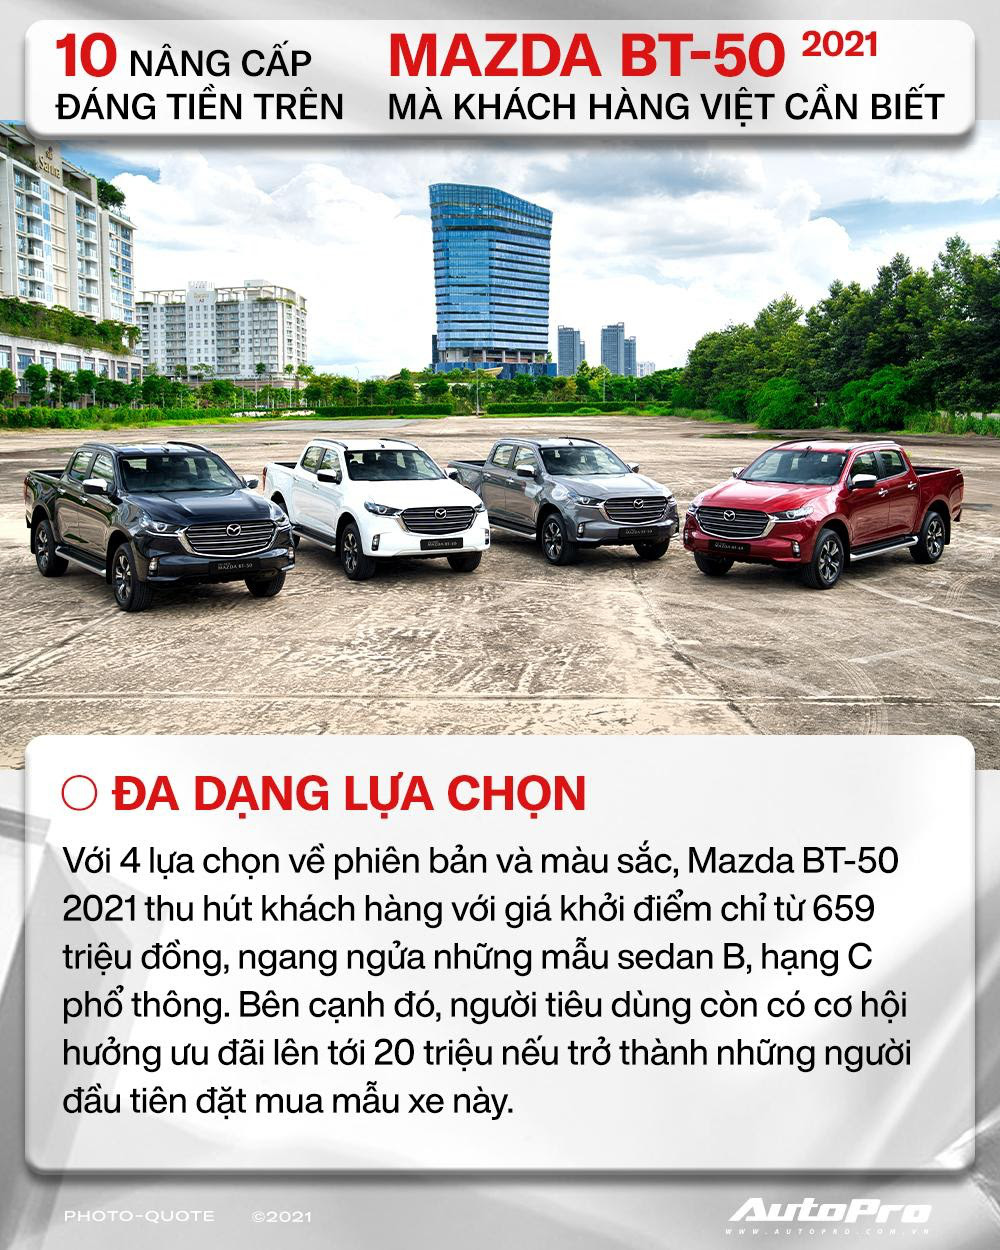 10 nâng cấp đáng tiền trên Mazda BT-50 2021 mà khách hàng Việt cần biết - Ảnh 10.